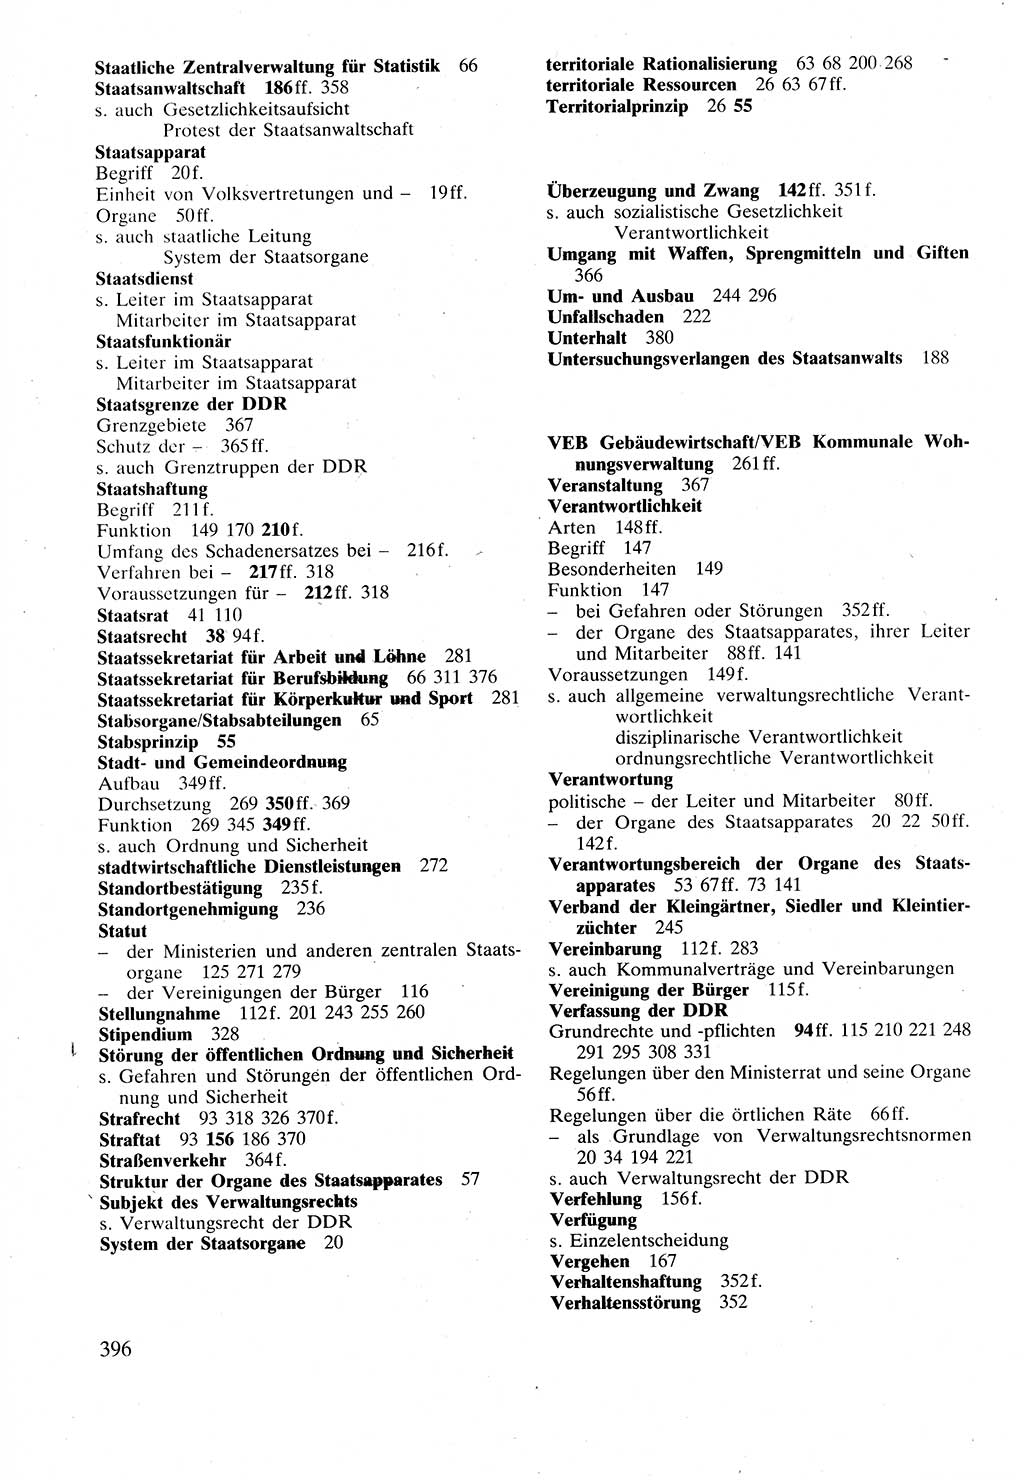 Verwaltungsrecht [Deutsche Demokratische Republik (DDR)], Lehrbuch 1988, Seite 396 (Verw.-R. DDR Lb. 1988, S. 396)